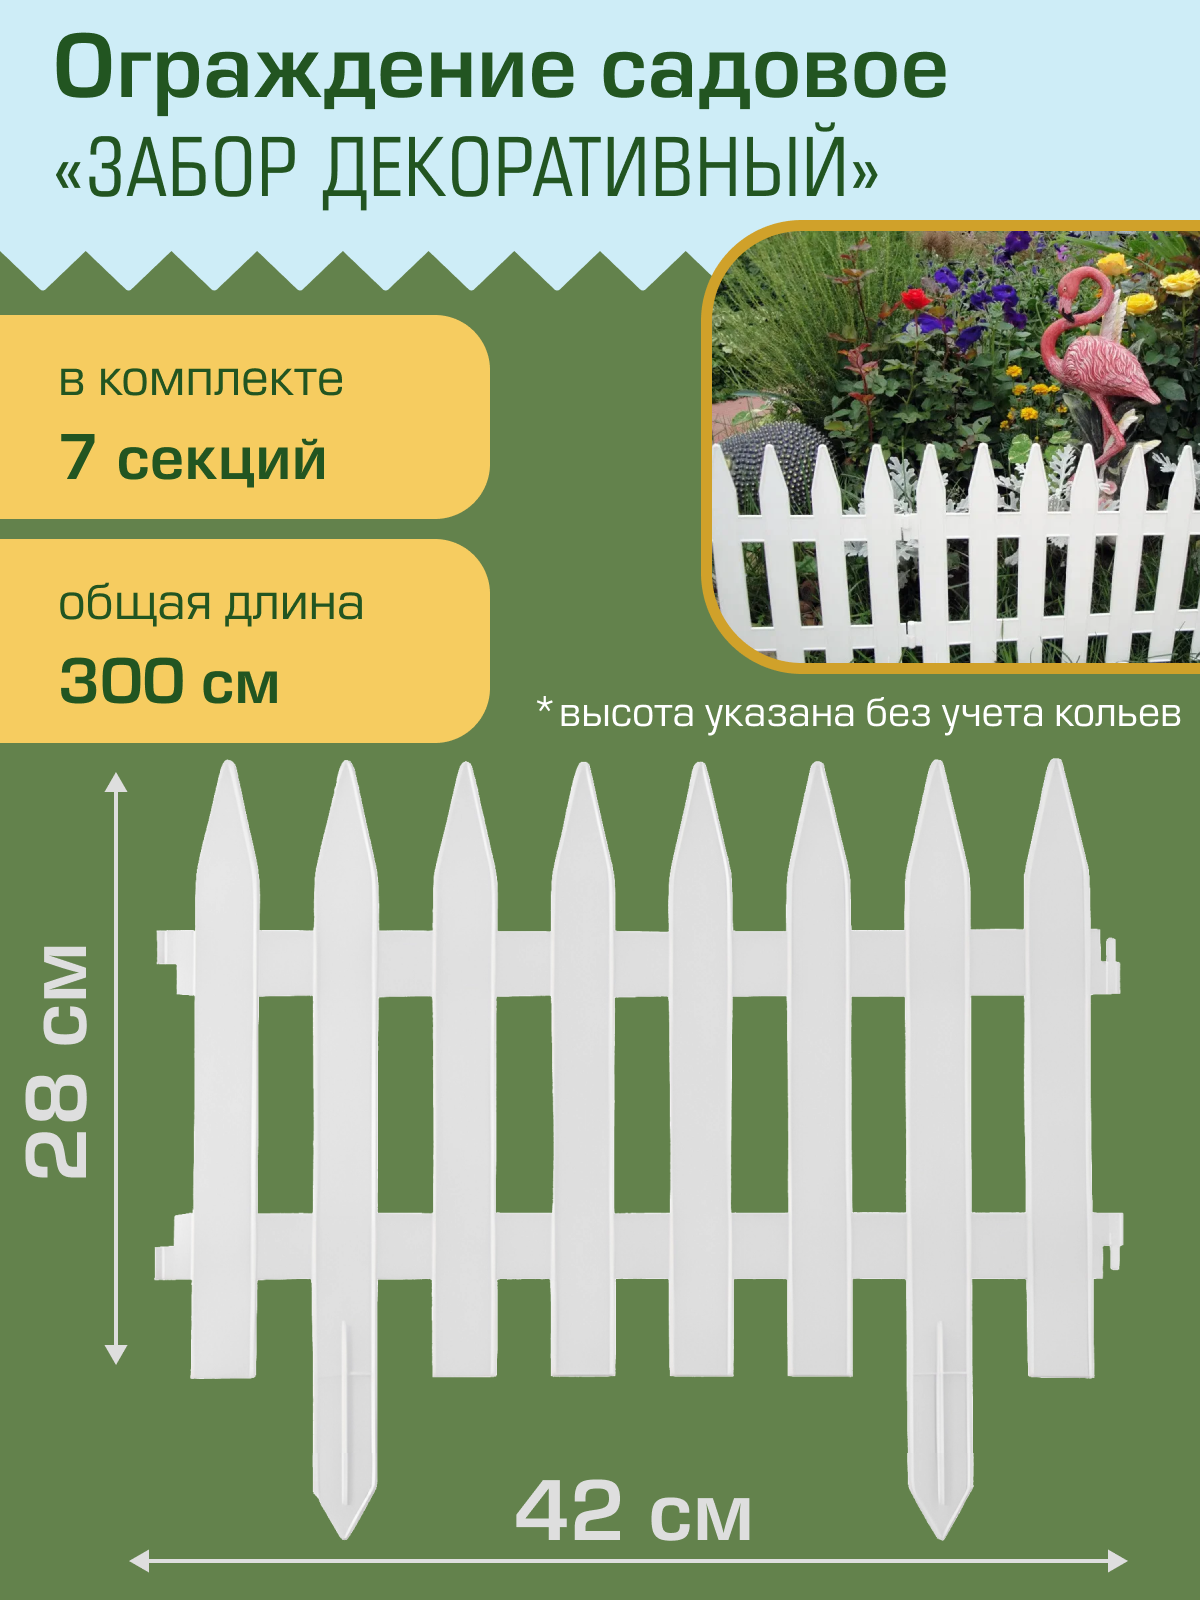 Ограждение садовое Полимерсад "Забор декоративный №1", белое